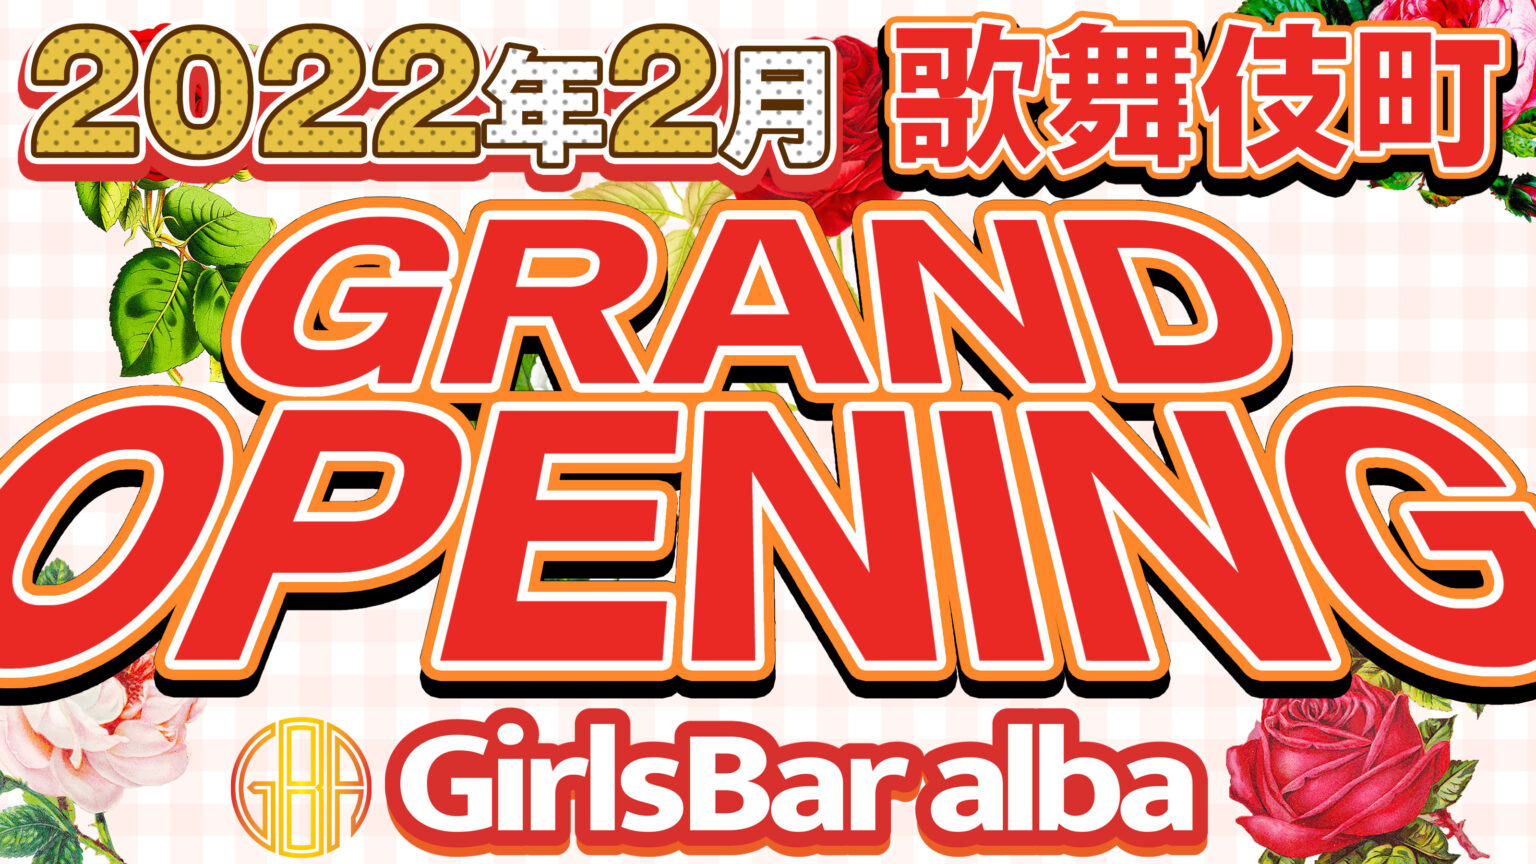 オープニングイベント開催中 - 歌舞伎町 ガールズバー Girls Bar alba アルバ